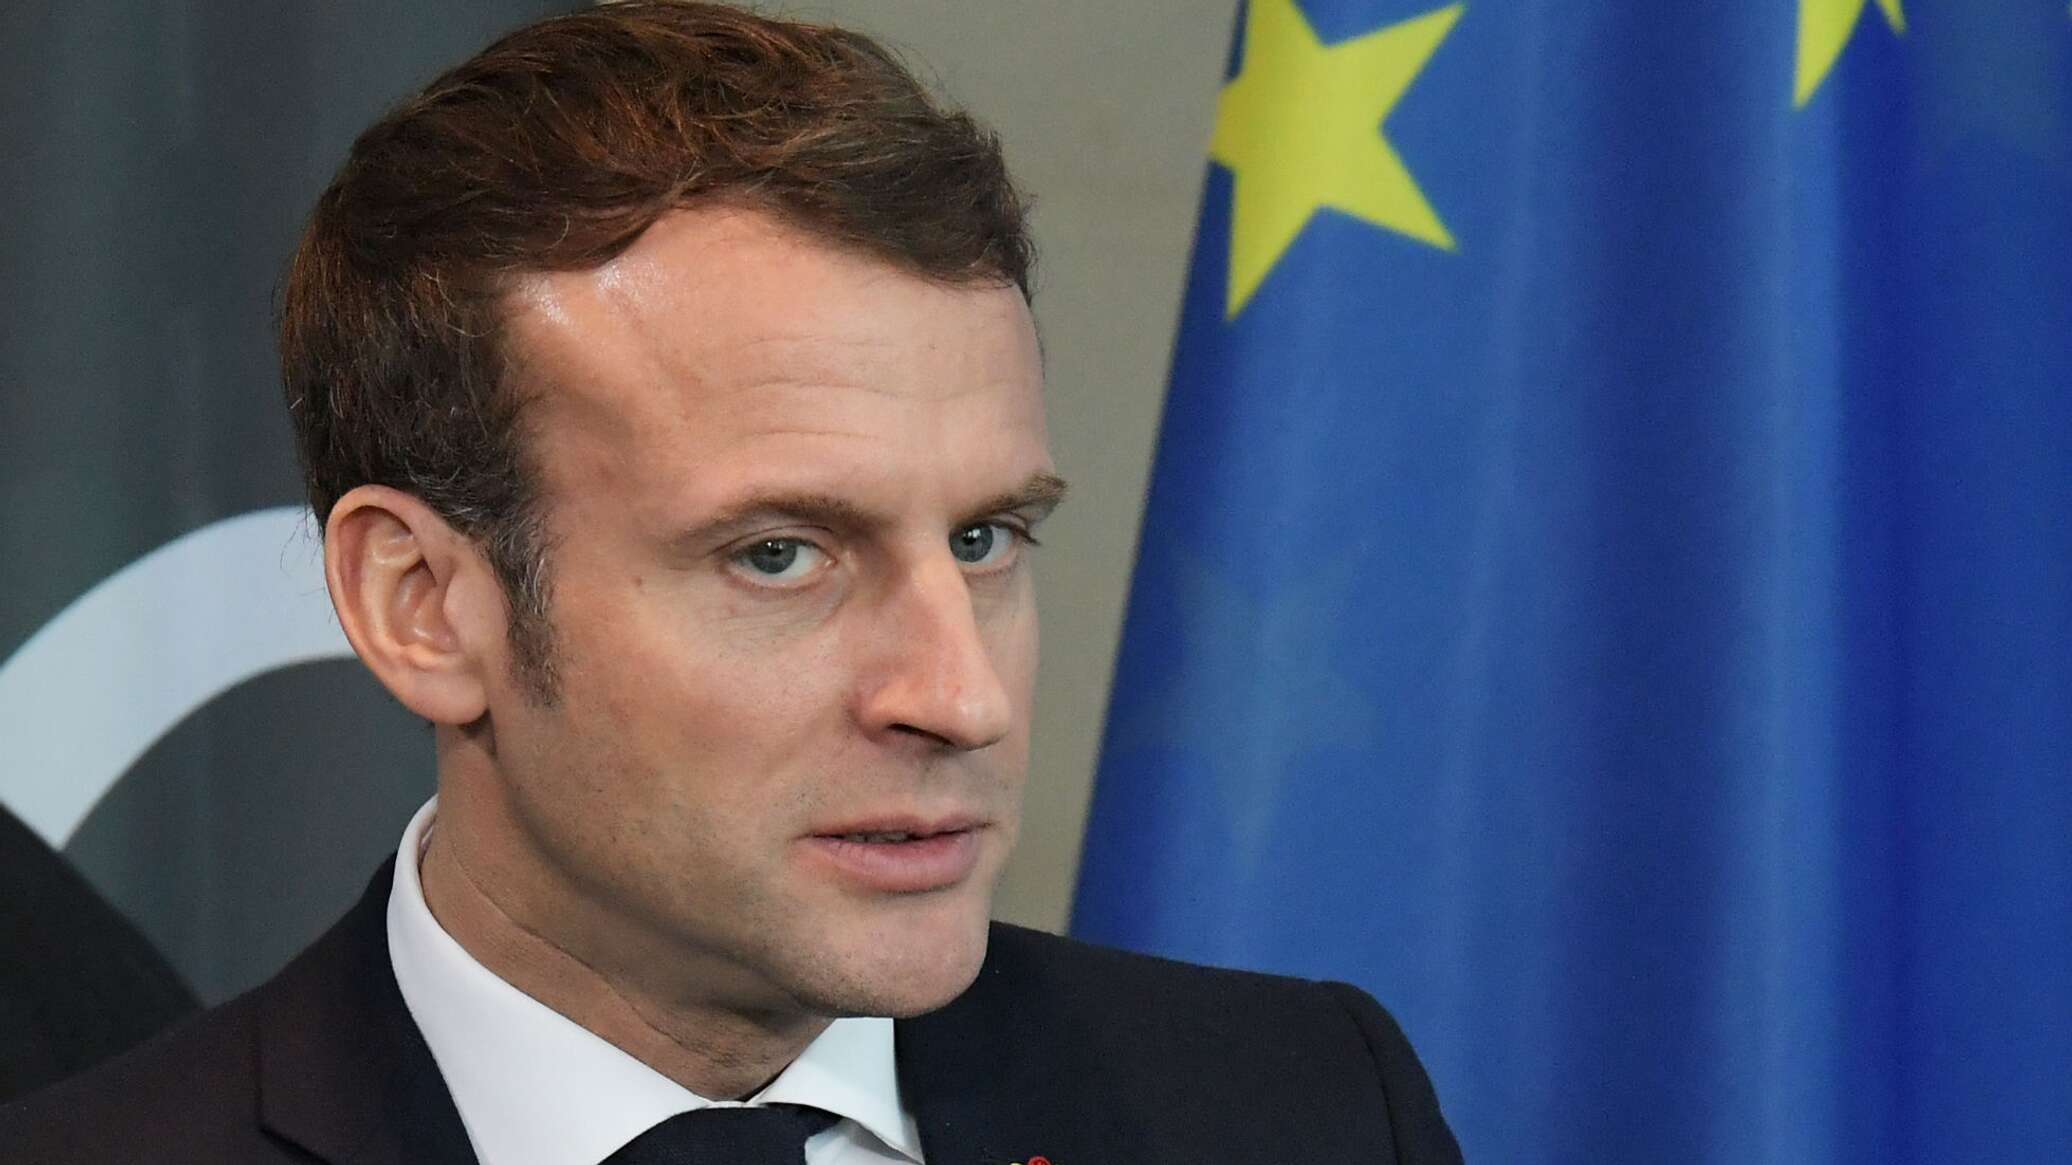 سياسي فرنسي: ماكرون يقود فرنسا للحرب مع روسيا